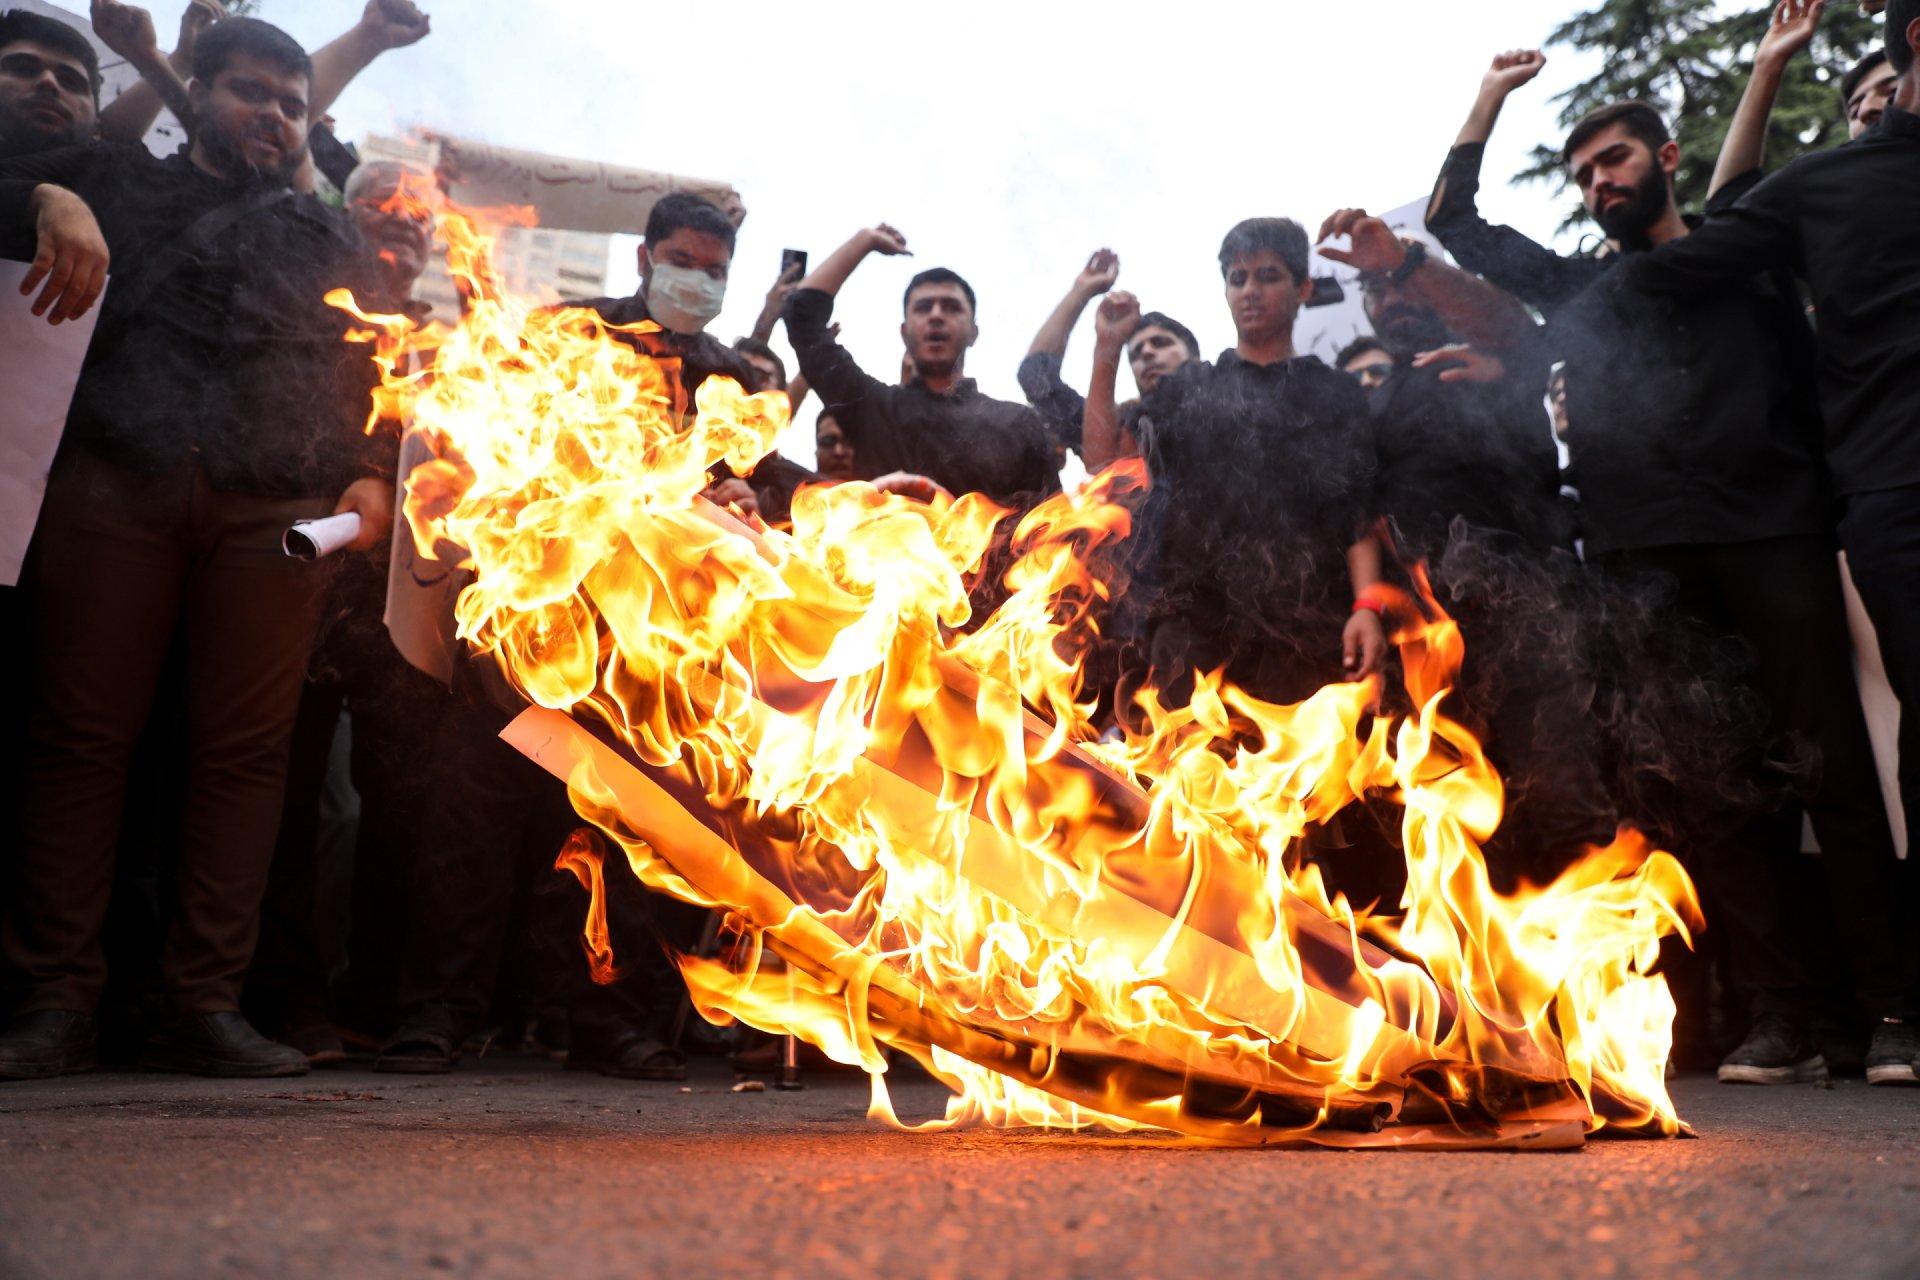 Protestafbrænding foran den svenske ambassade i Teheran, Iran. Herhjemme var der fem koranafbrændinger, som ingen havde bemærket, før udenrigsministeren nævnte dem som begrundelse for, at nu var det blevet for meget.